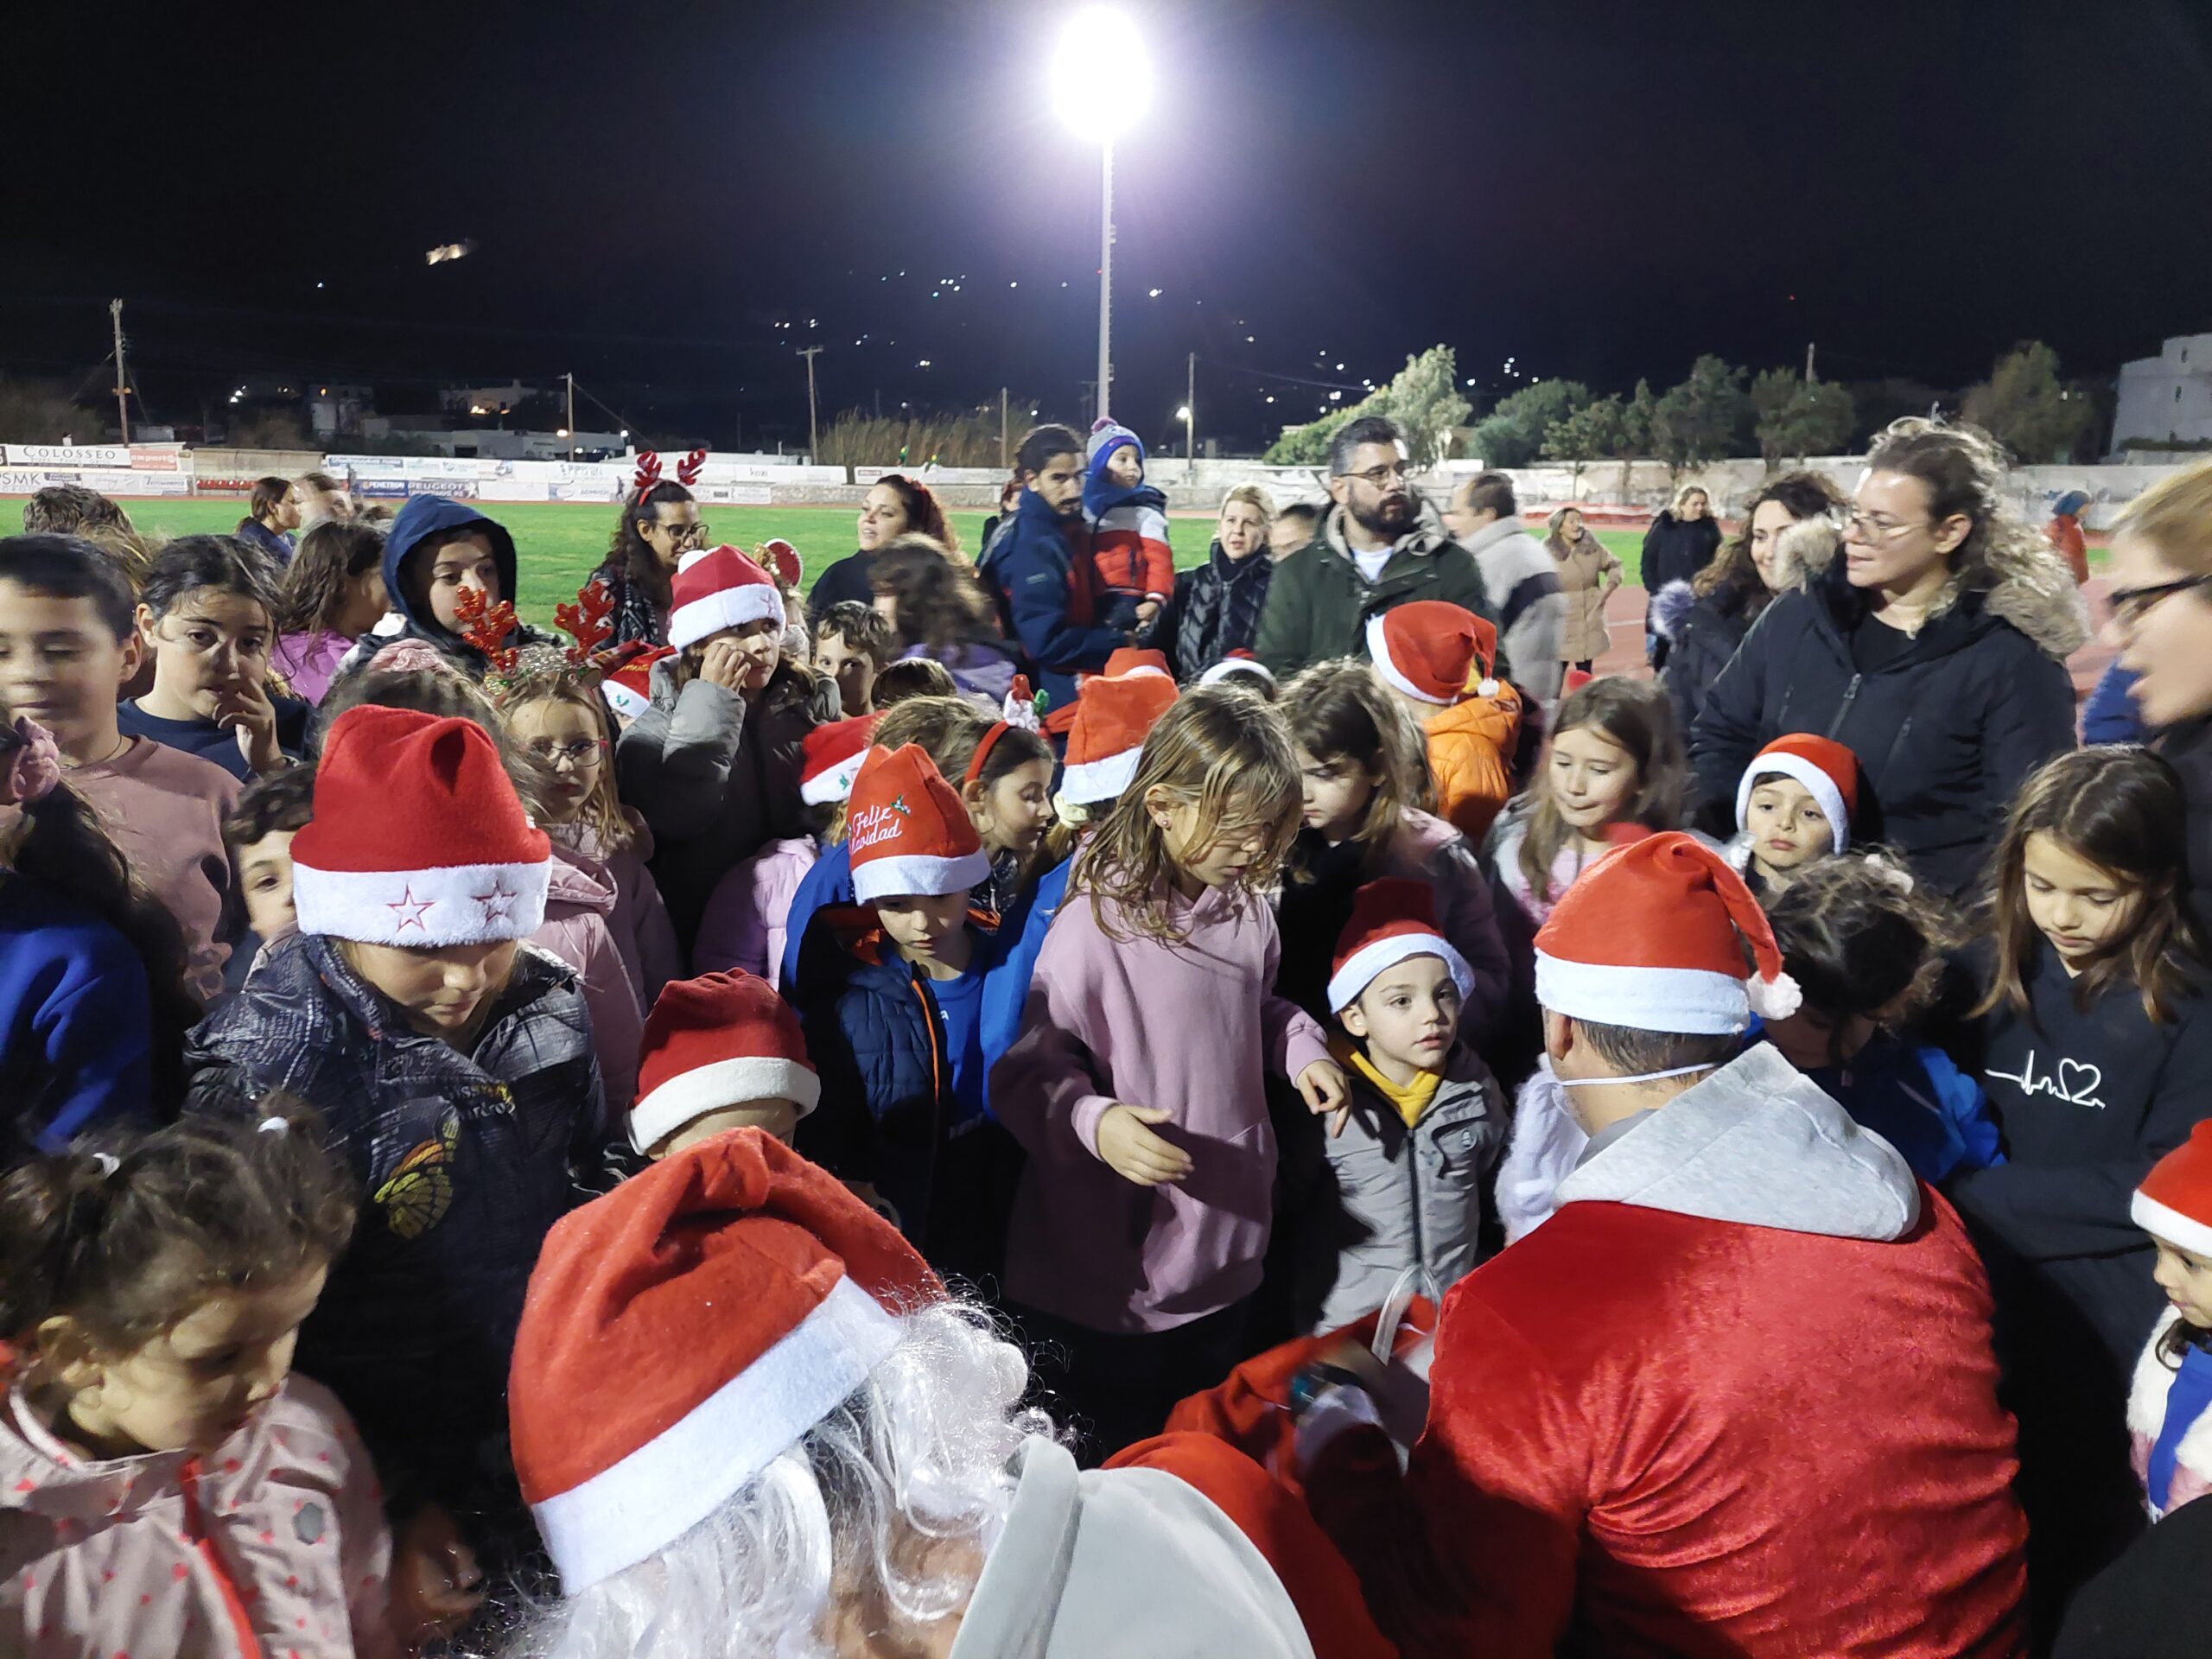 Χριστούγεννα 2023 - Πανναξιακός: Παιδιά και εκκολαπτόμενοι αθλητές... και χόρεψαν και έτρεξαν και δώρα αγιοβασιλιάτικα πήραν και γευστικότατες λιχουδιές απόλαυσαν!!!